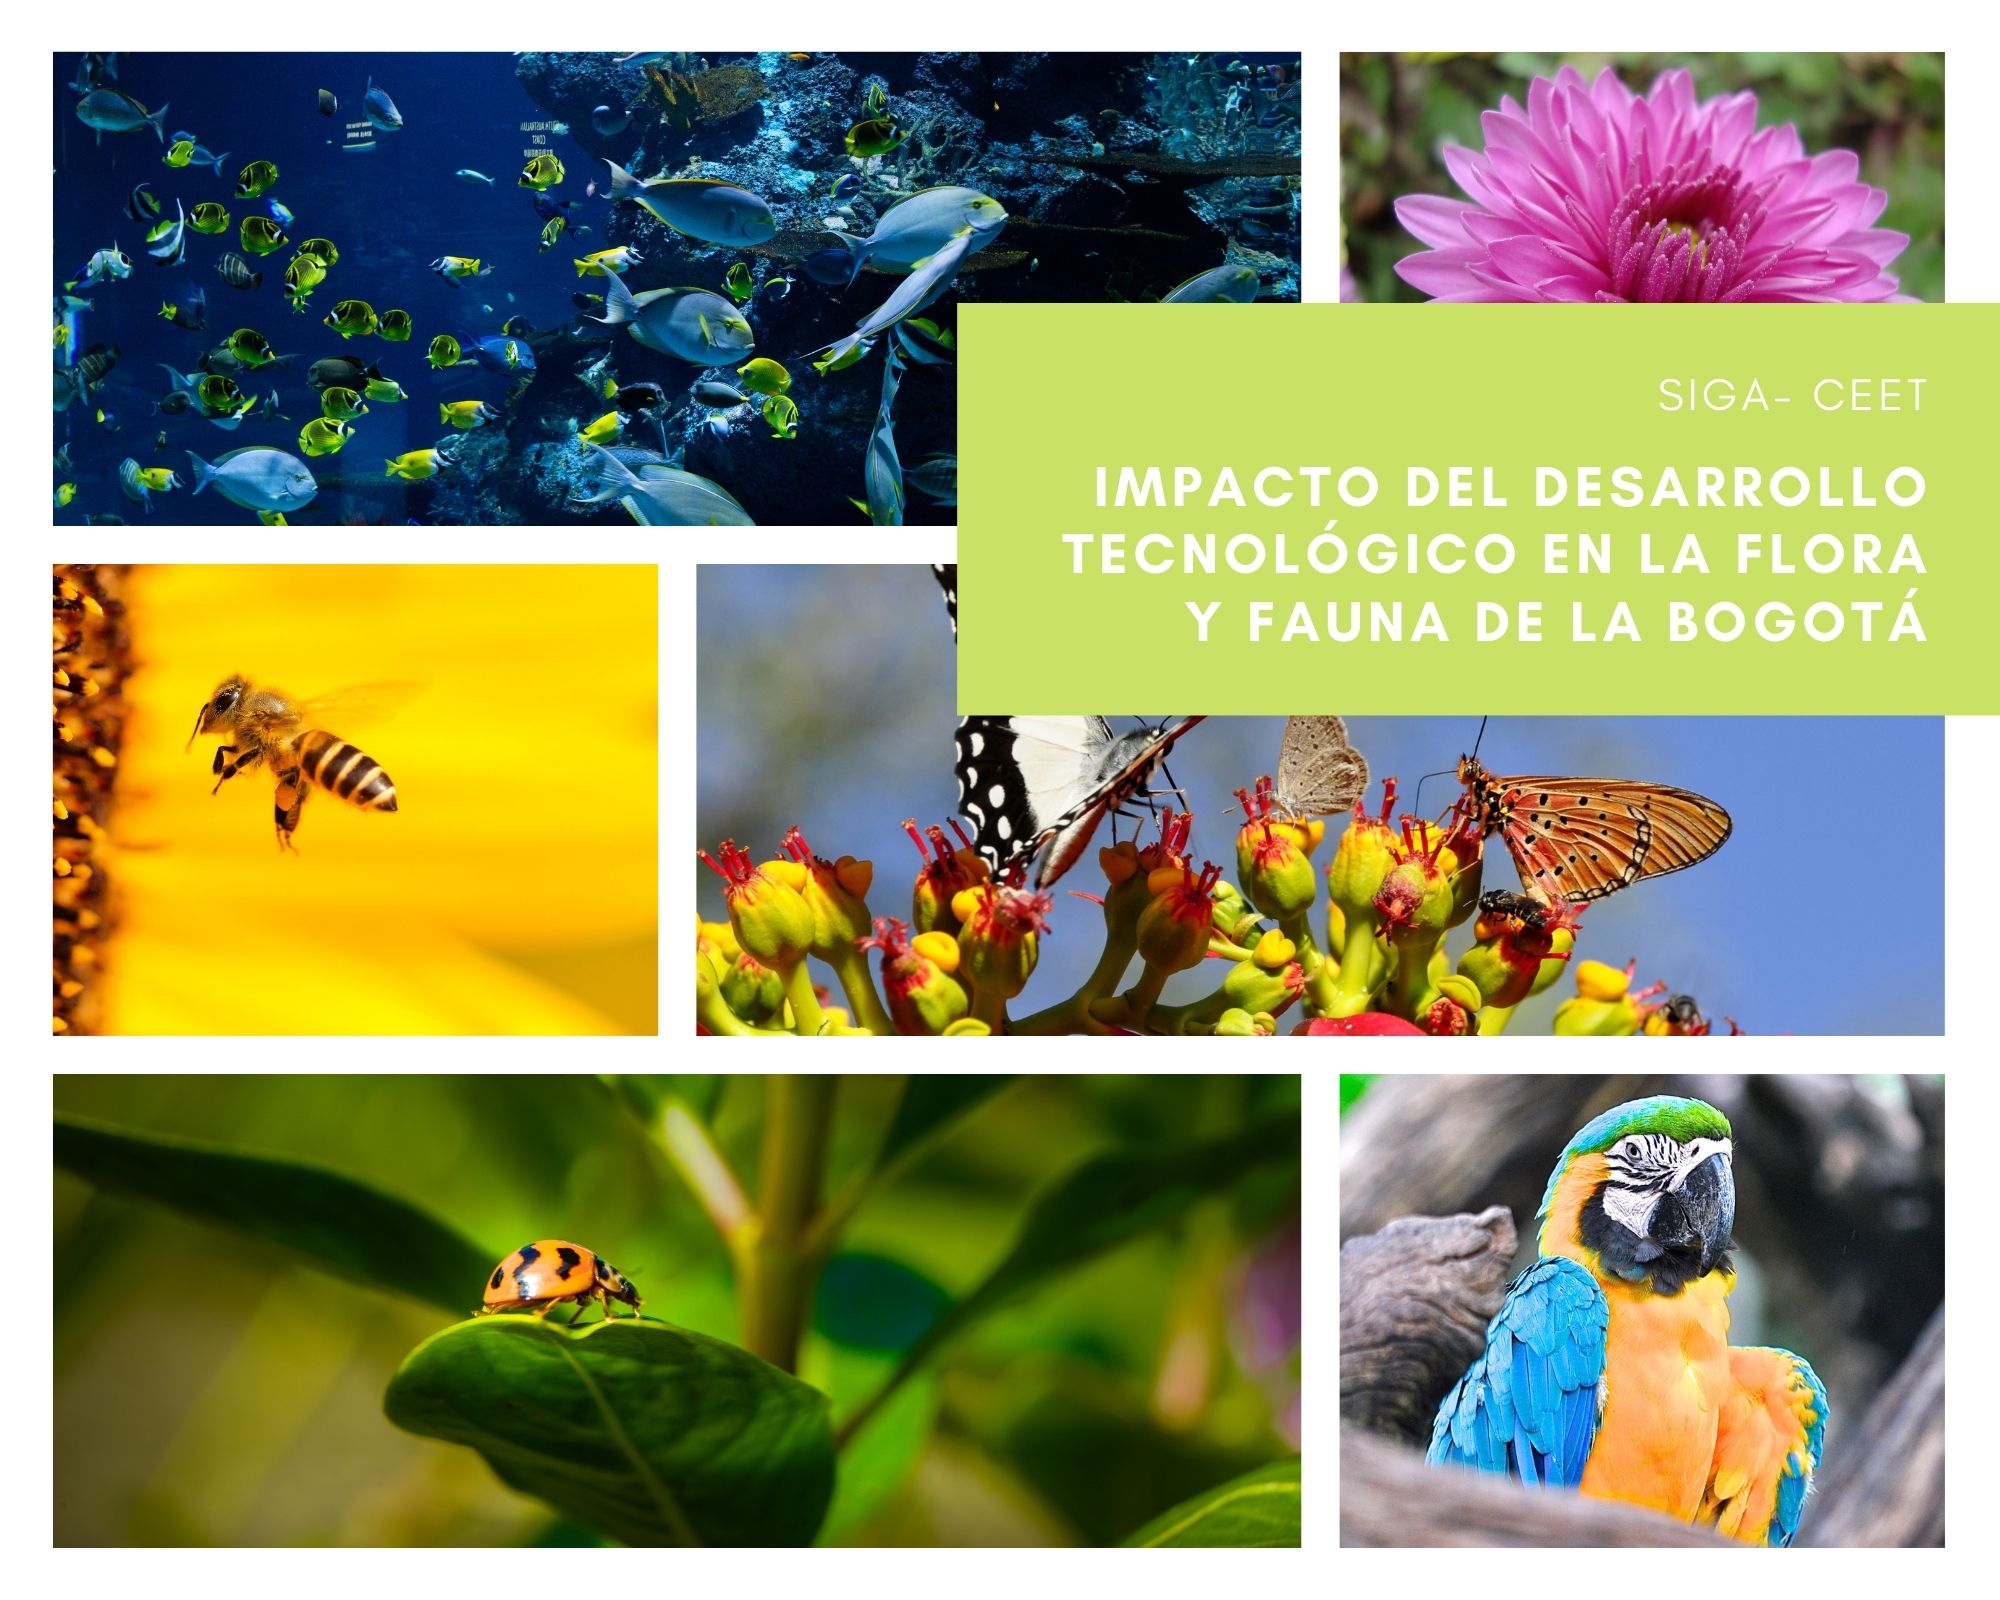 CEET: Impacto del desarrollo tecnológico en la flora y fauna de la ciudad